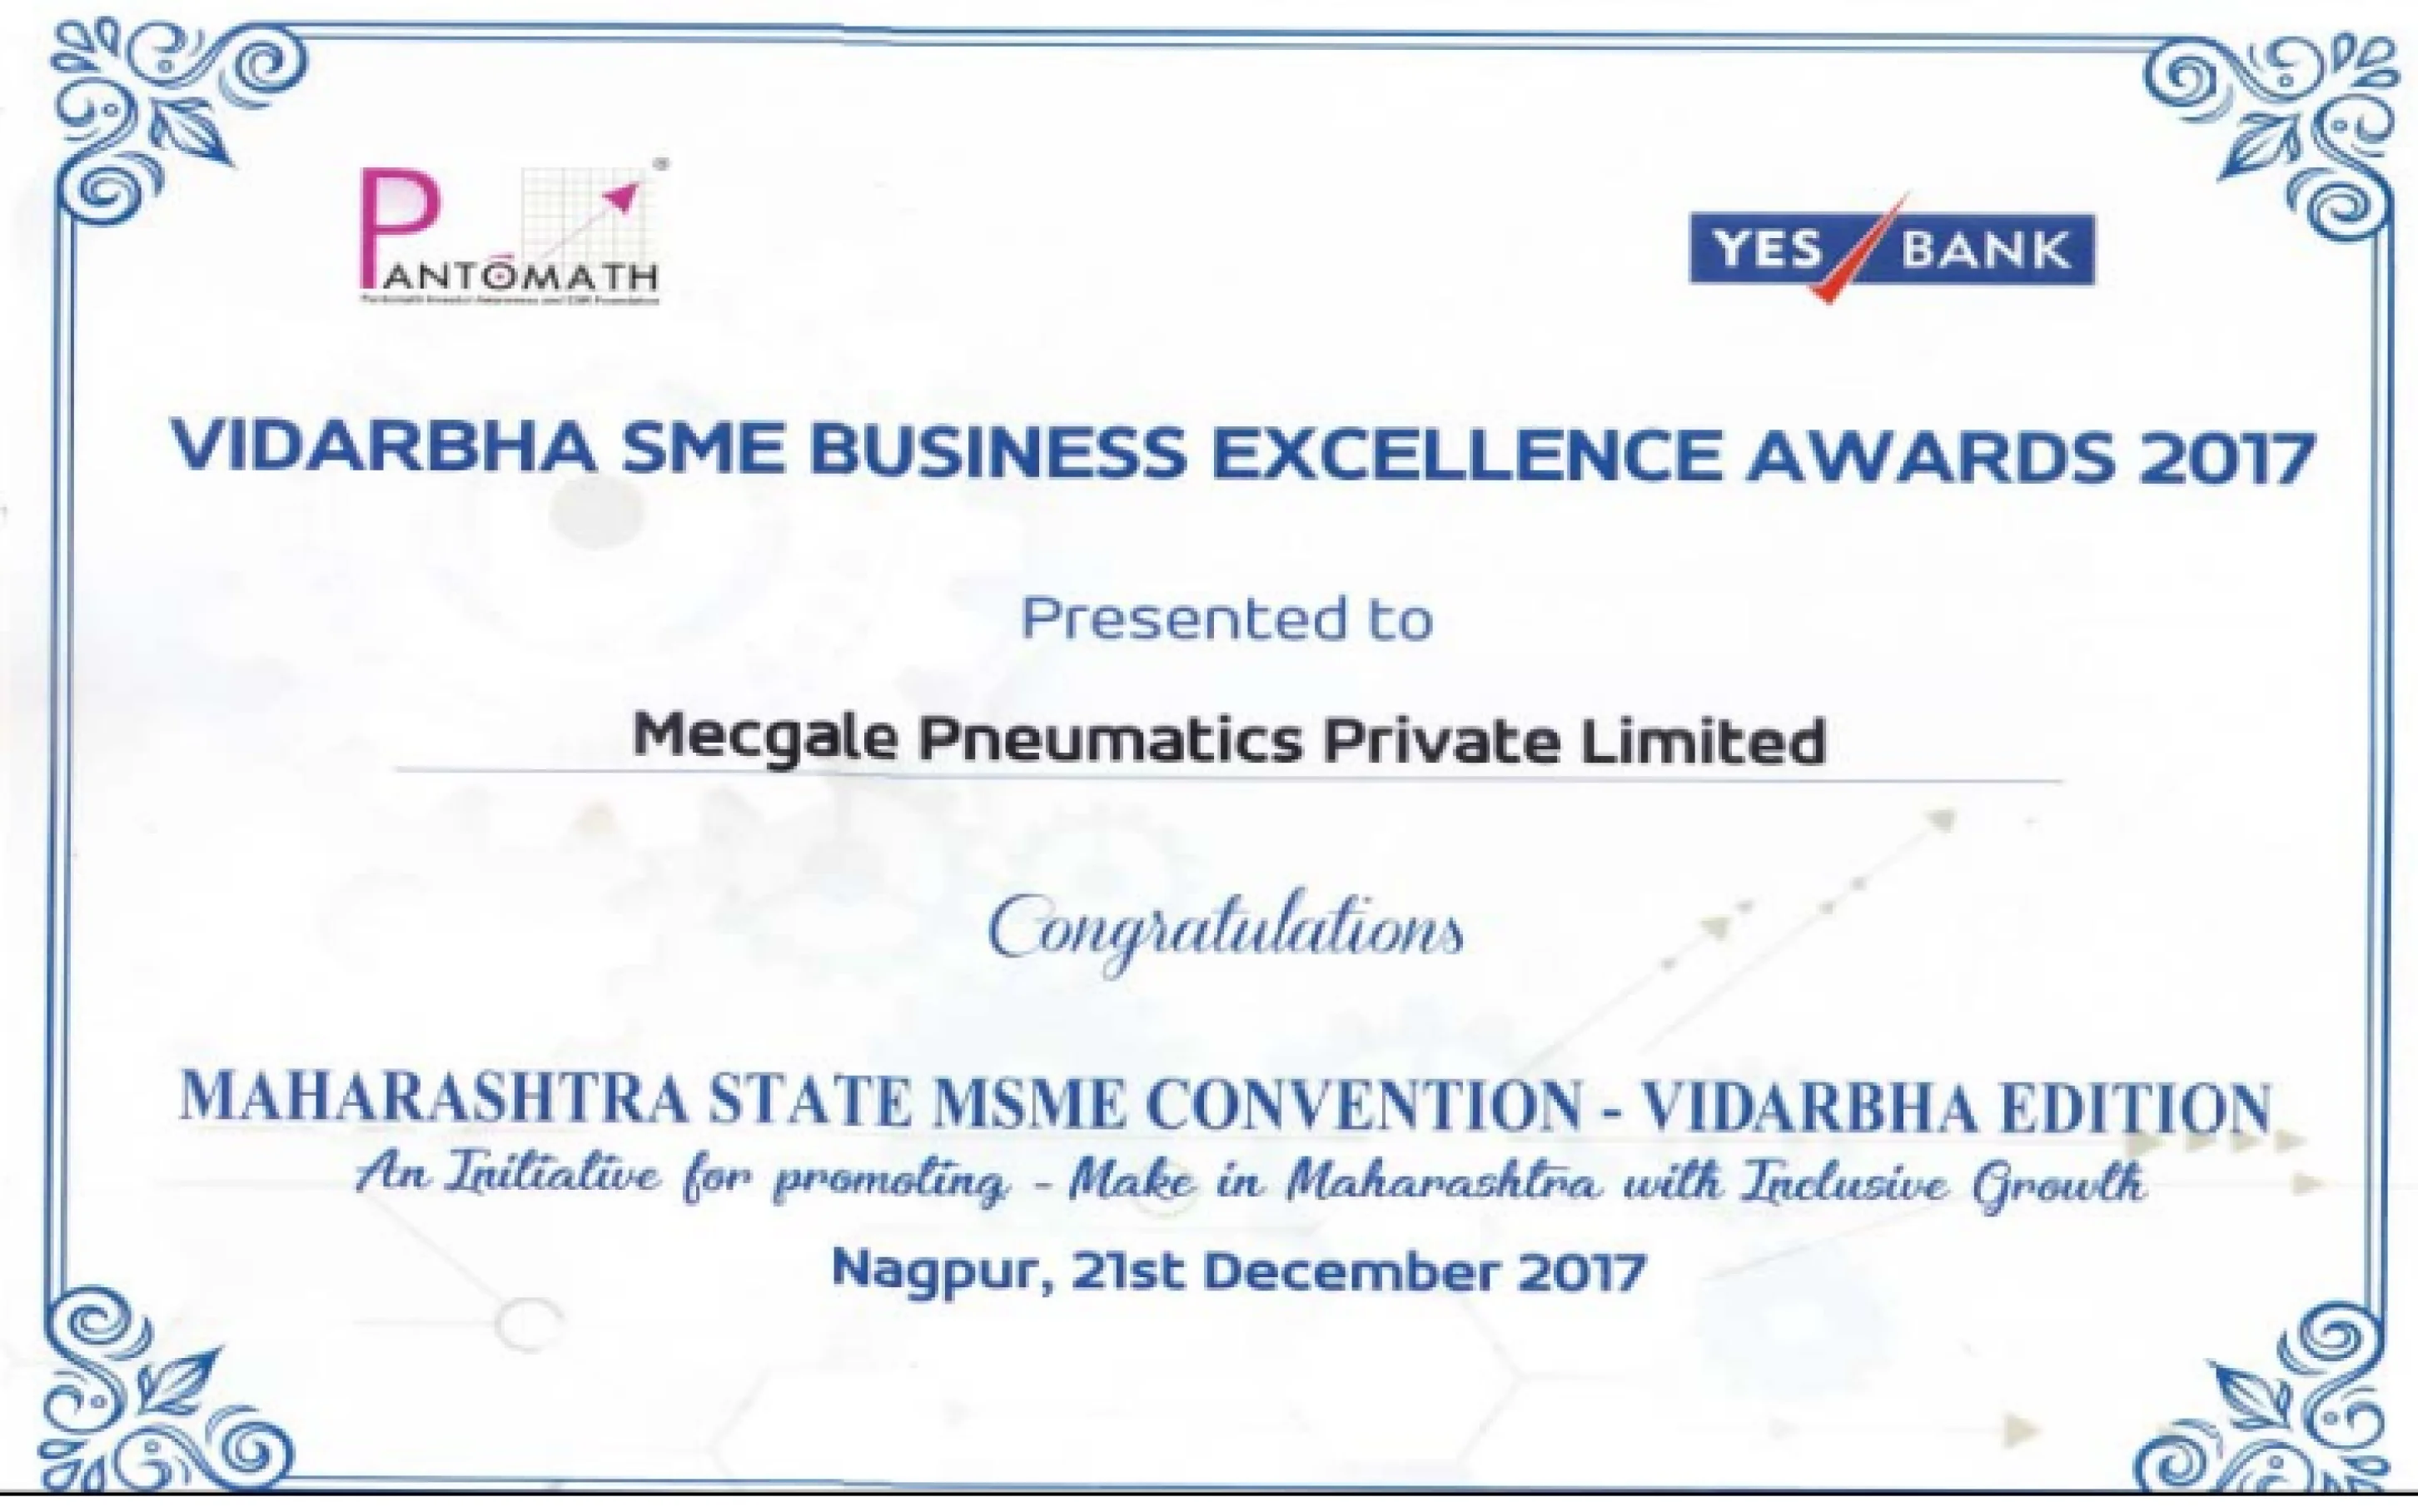 Vidarbha SME Business Excellence Awards 2017